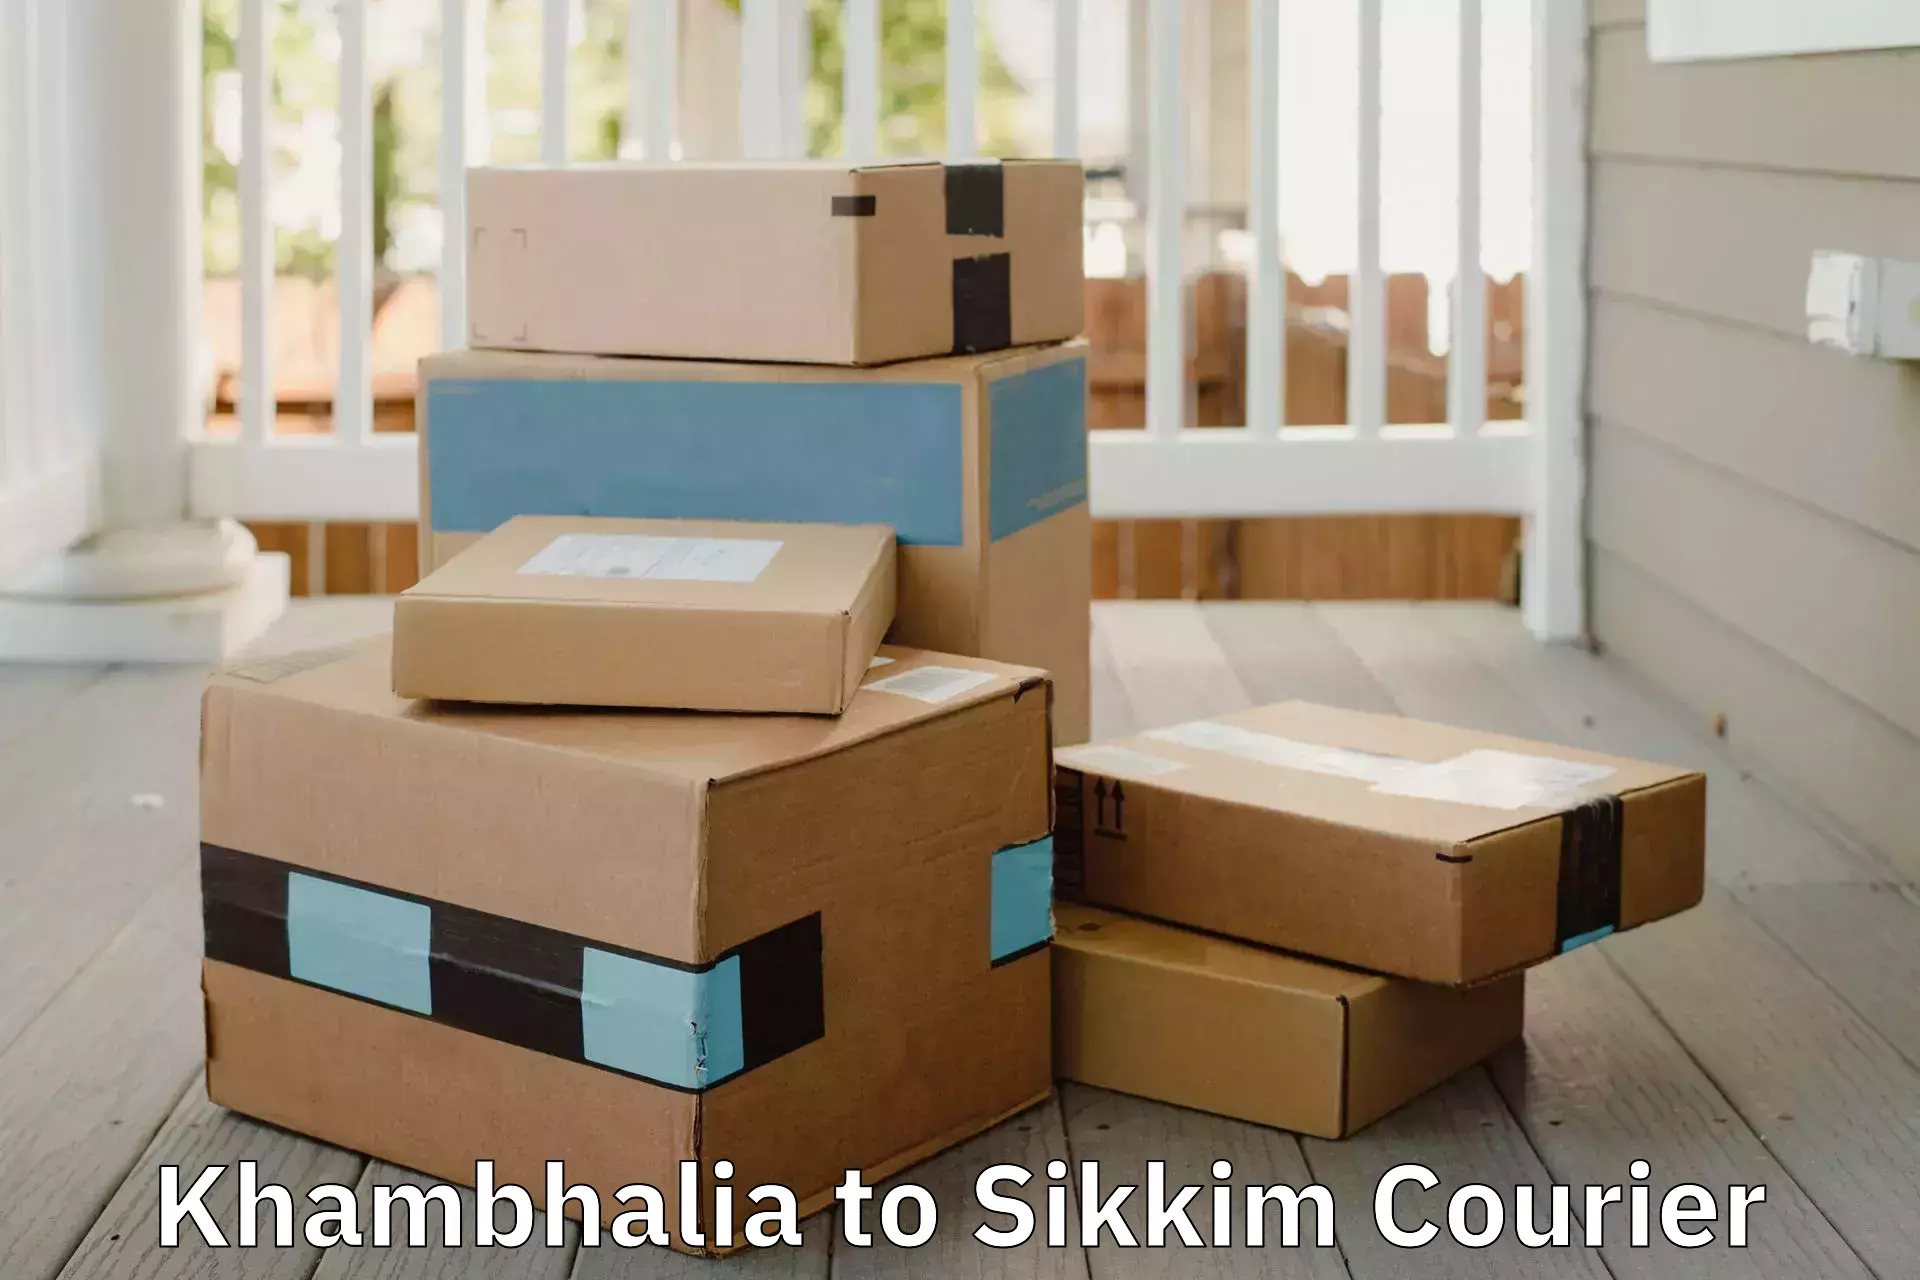 Quality moving company Khambhalia to Sikkim